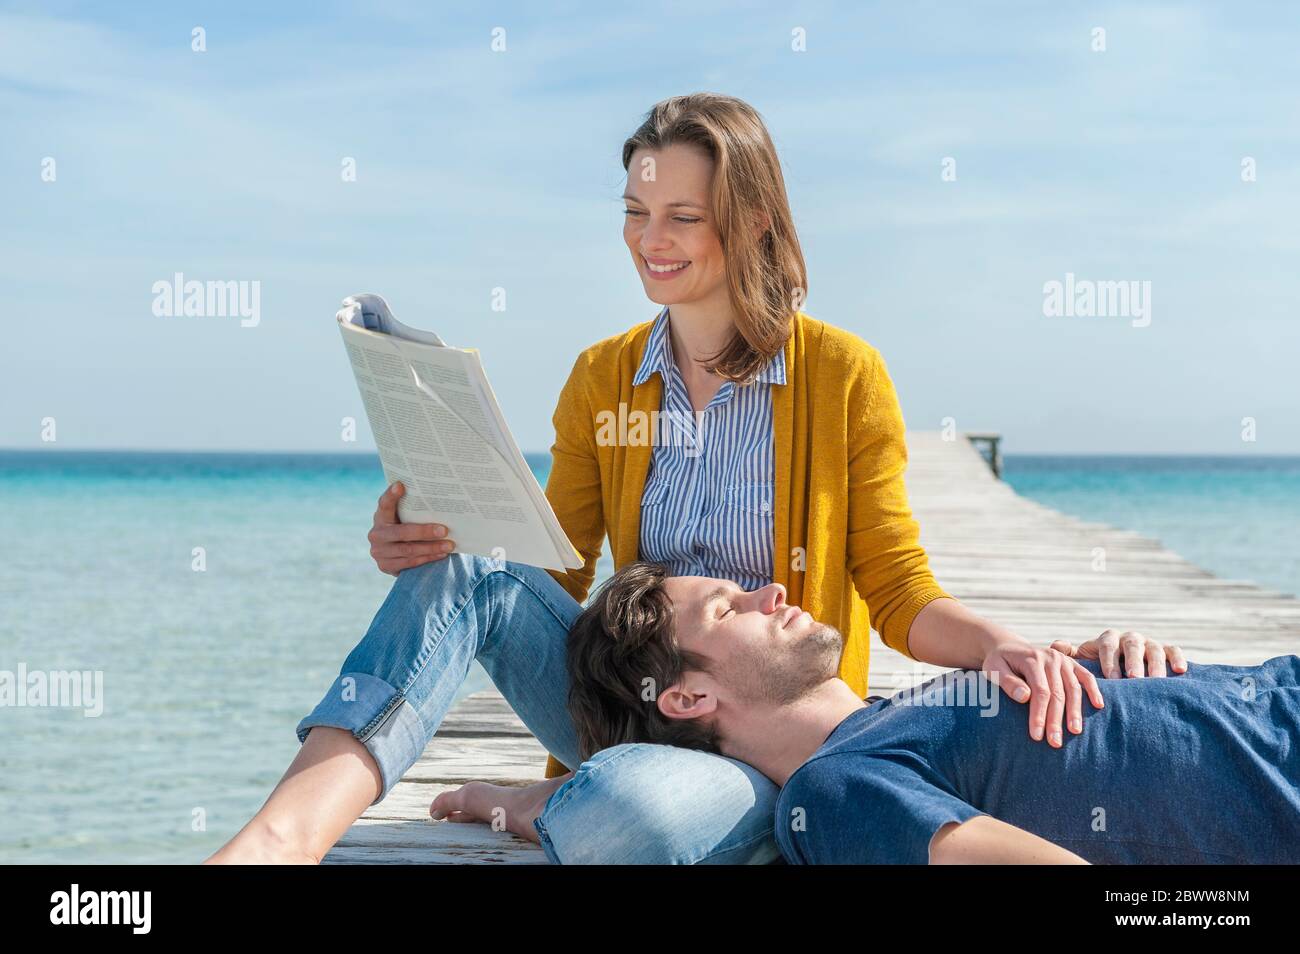 Portrait de la femme heureuse se relaxant avec son partenaire sur la jetée, Majorque, Espagne Banque D'Images